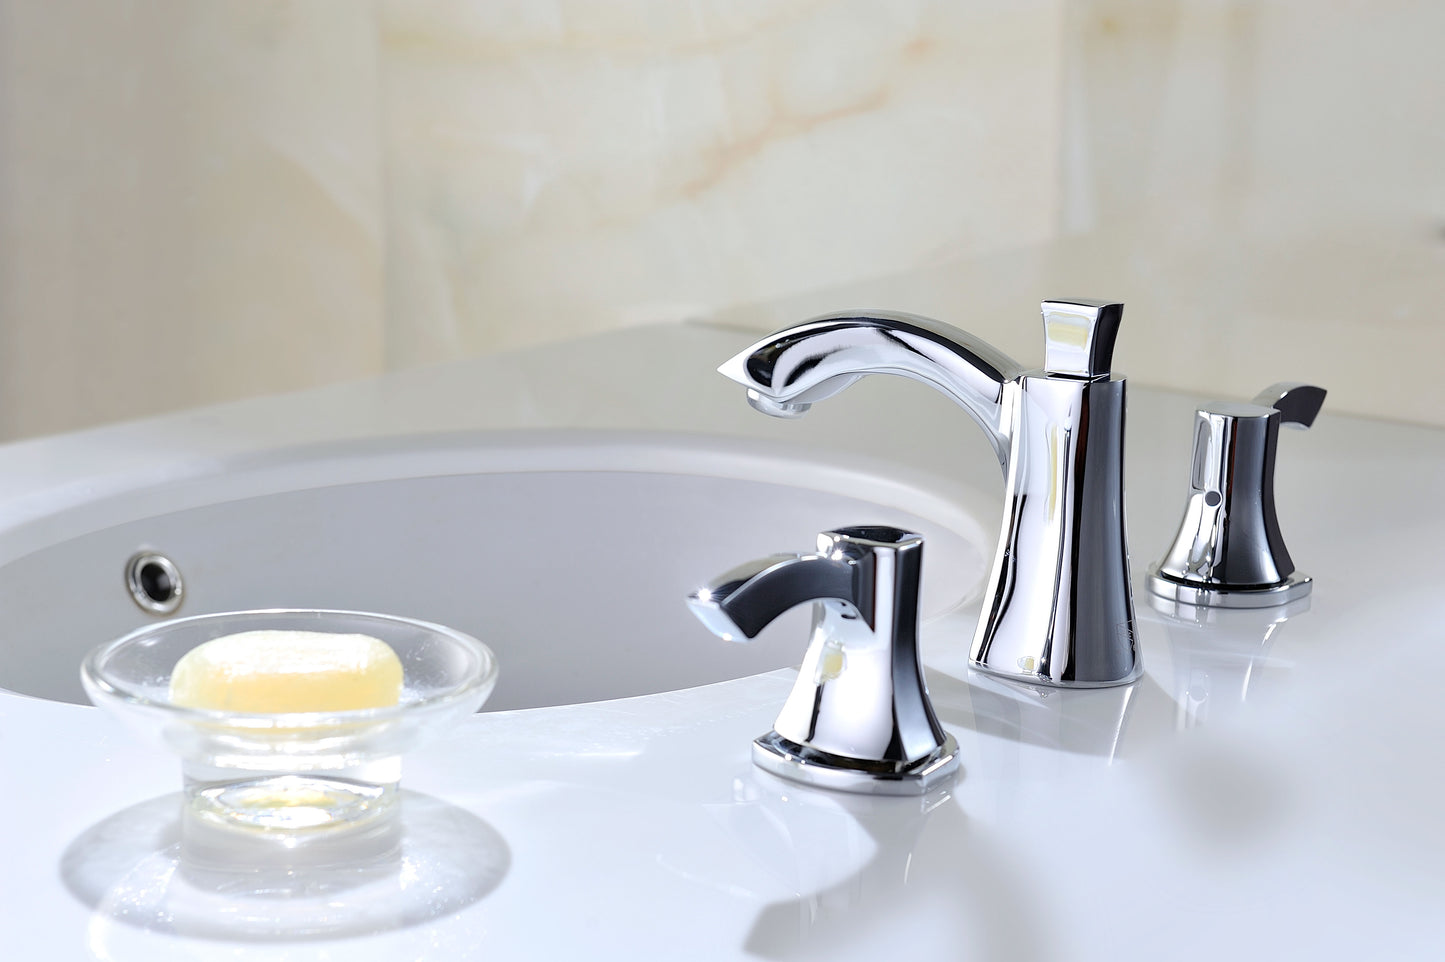 Sonata Series 8 in. Widespread 2-Handle Mid-Arc Bathroom Faucet